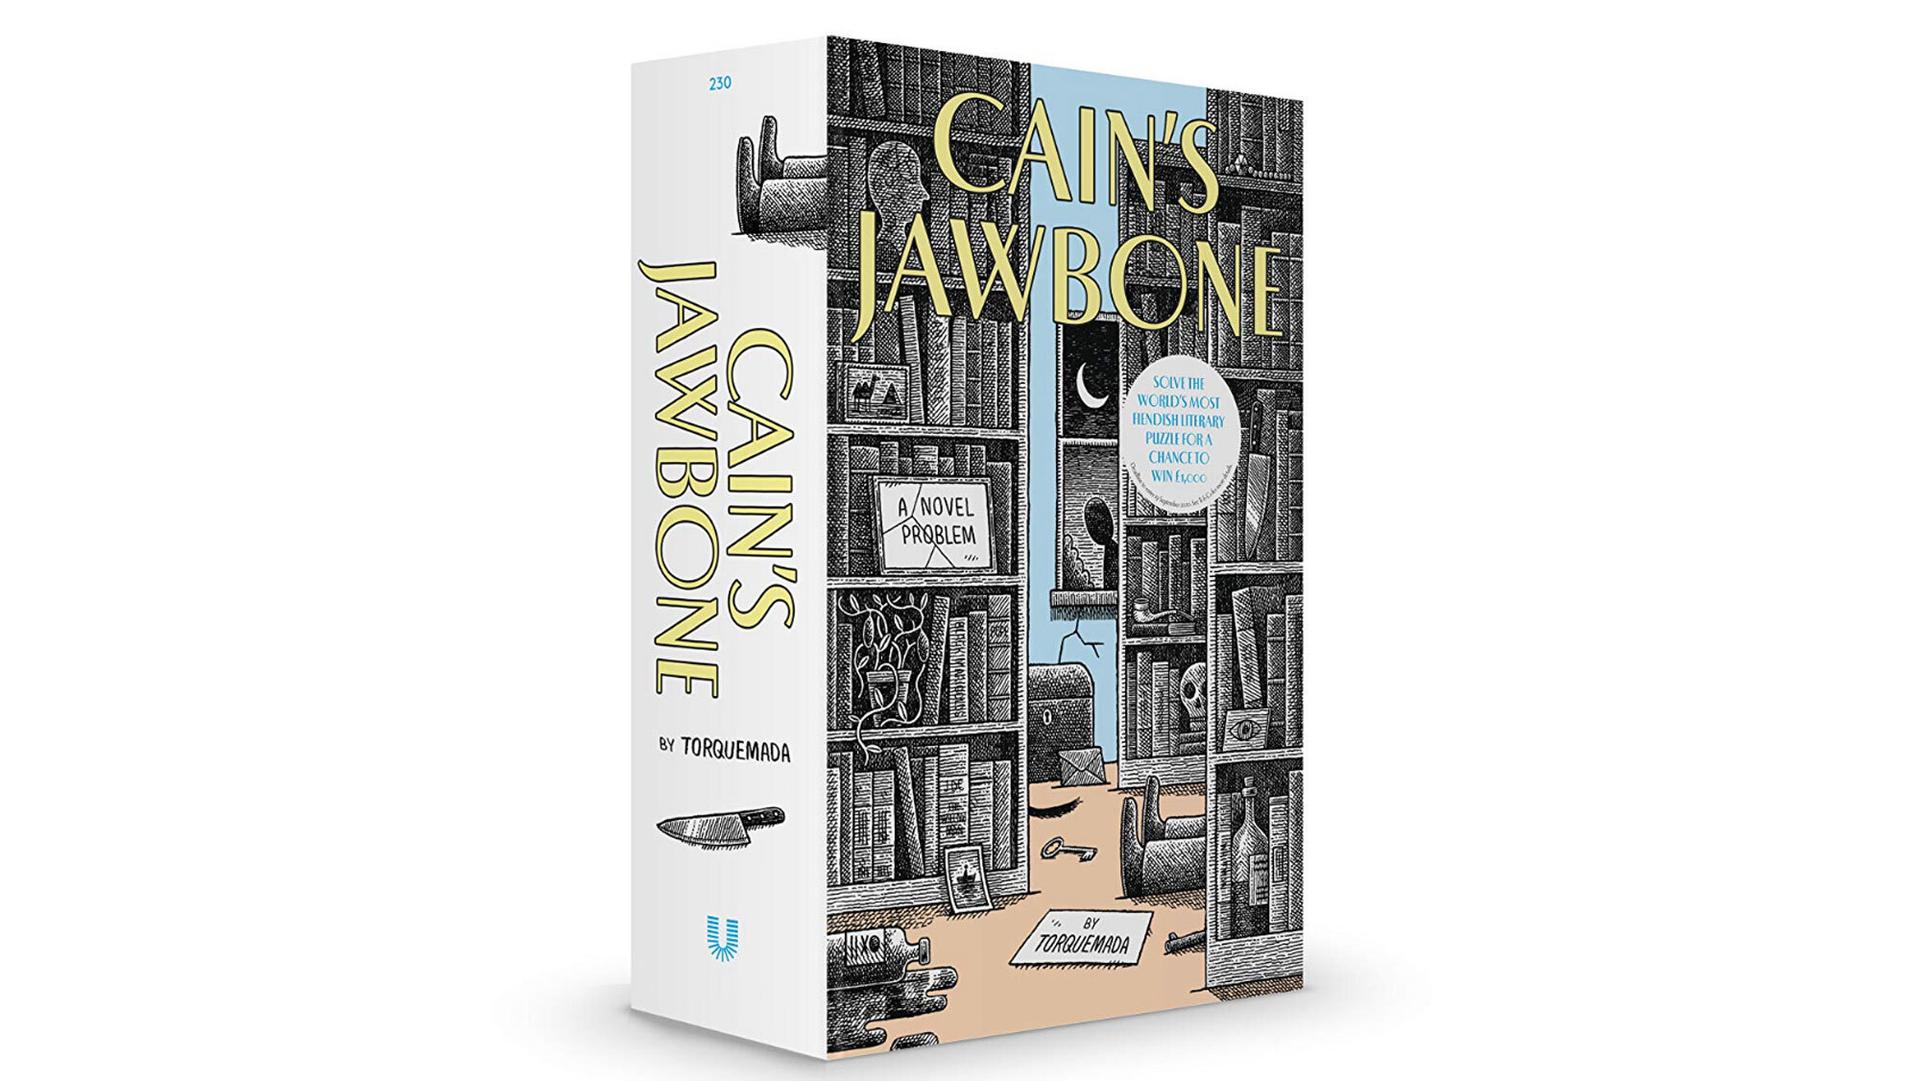 "Cain’s Jawbone," by Edward Powys Mathers